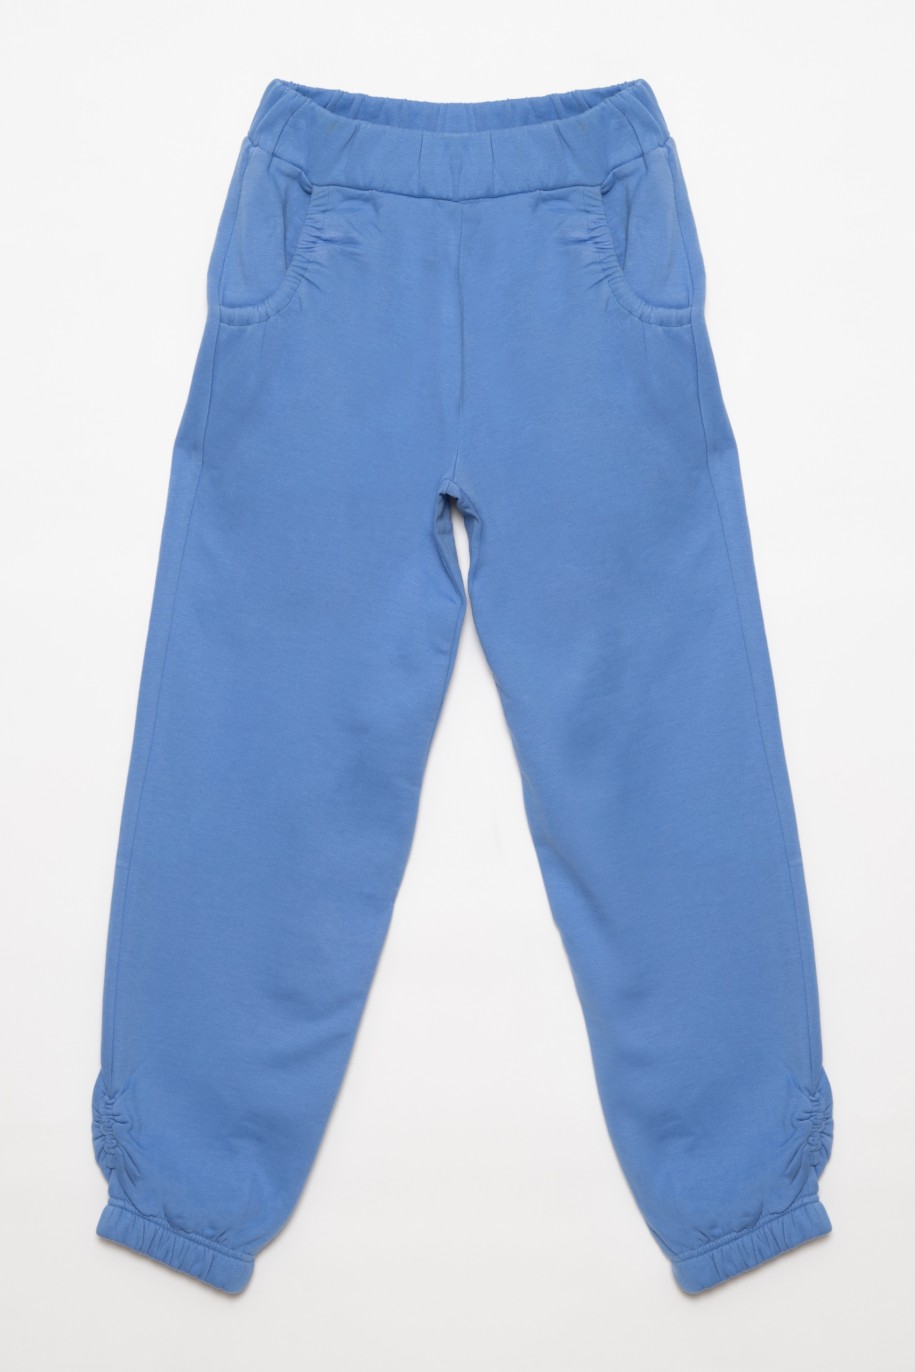 Niebieskie spodnie dresowe dla dziewczyny ze ściągaczami - 31816